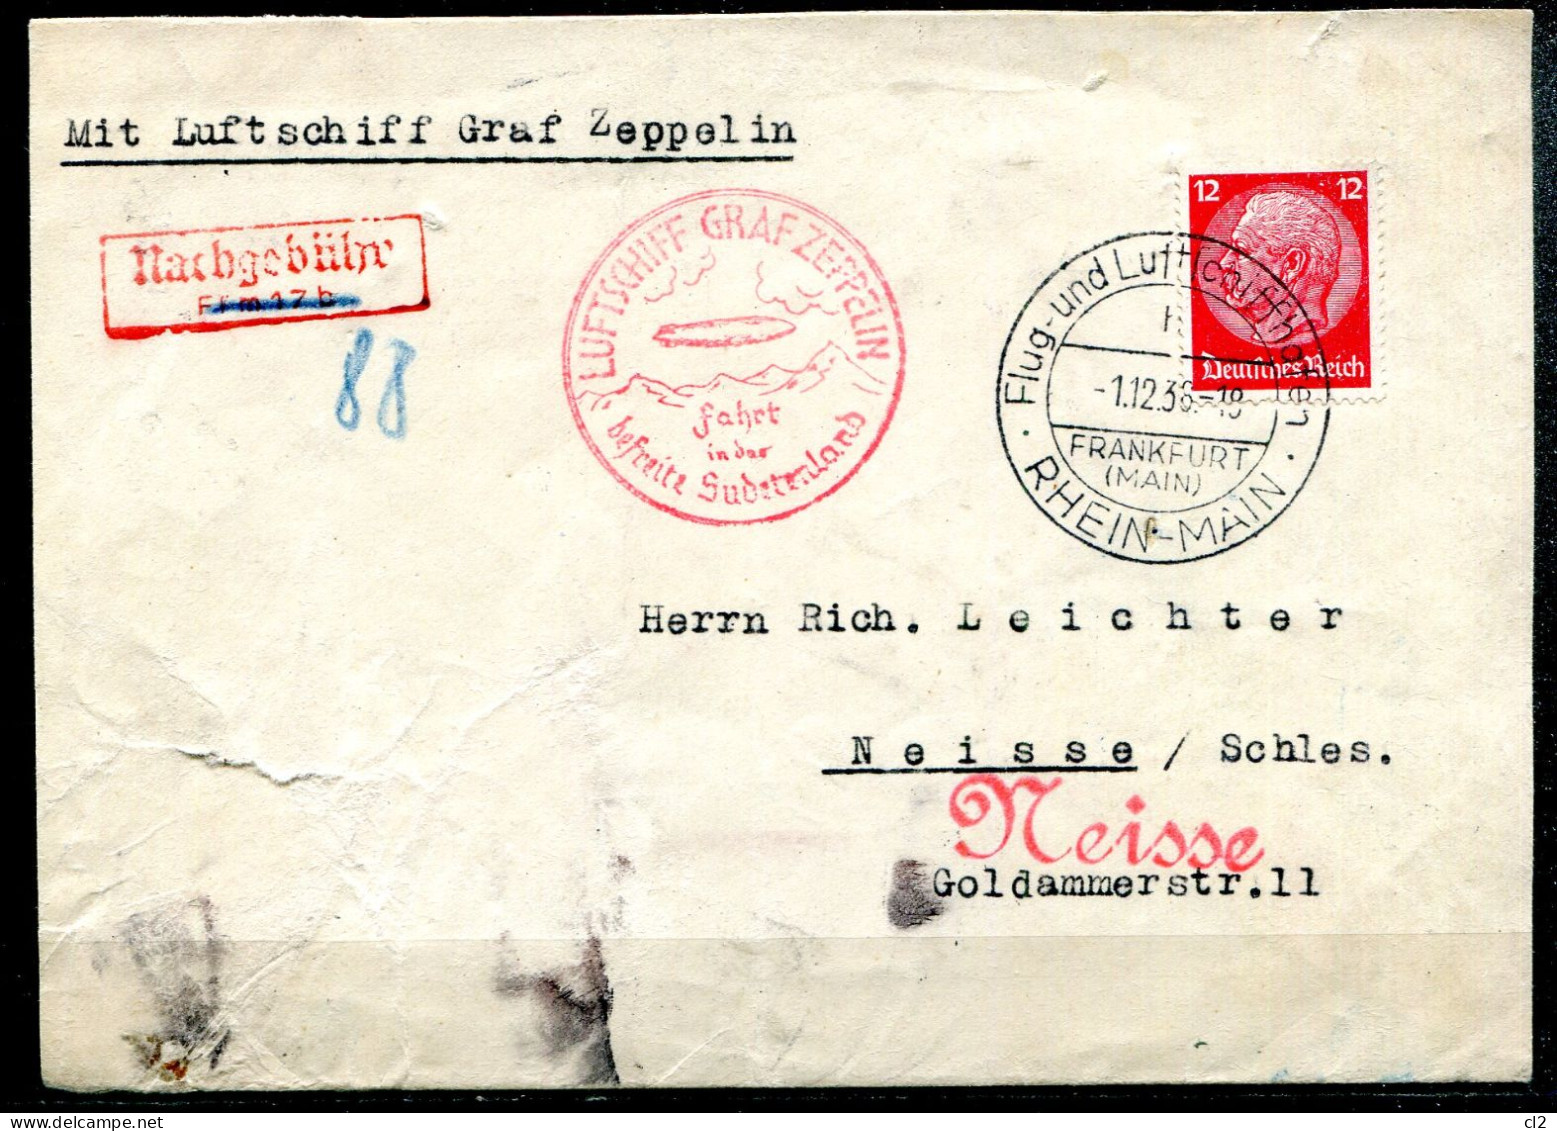 ALLEMAGNE - 1.12.36 - Luftschiff Graf Zeppelin Fahrt In Der Befreite Sudetenland (Frankfurt Nach Neisse/Schles.) - Cartas & Documentos